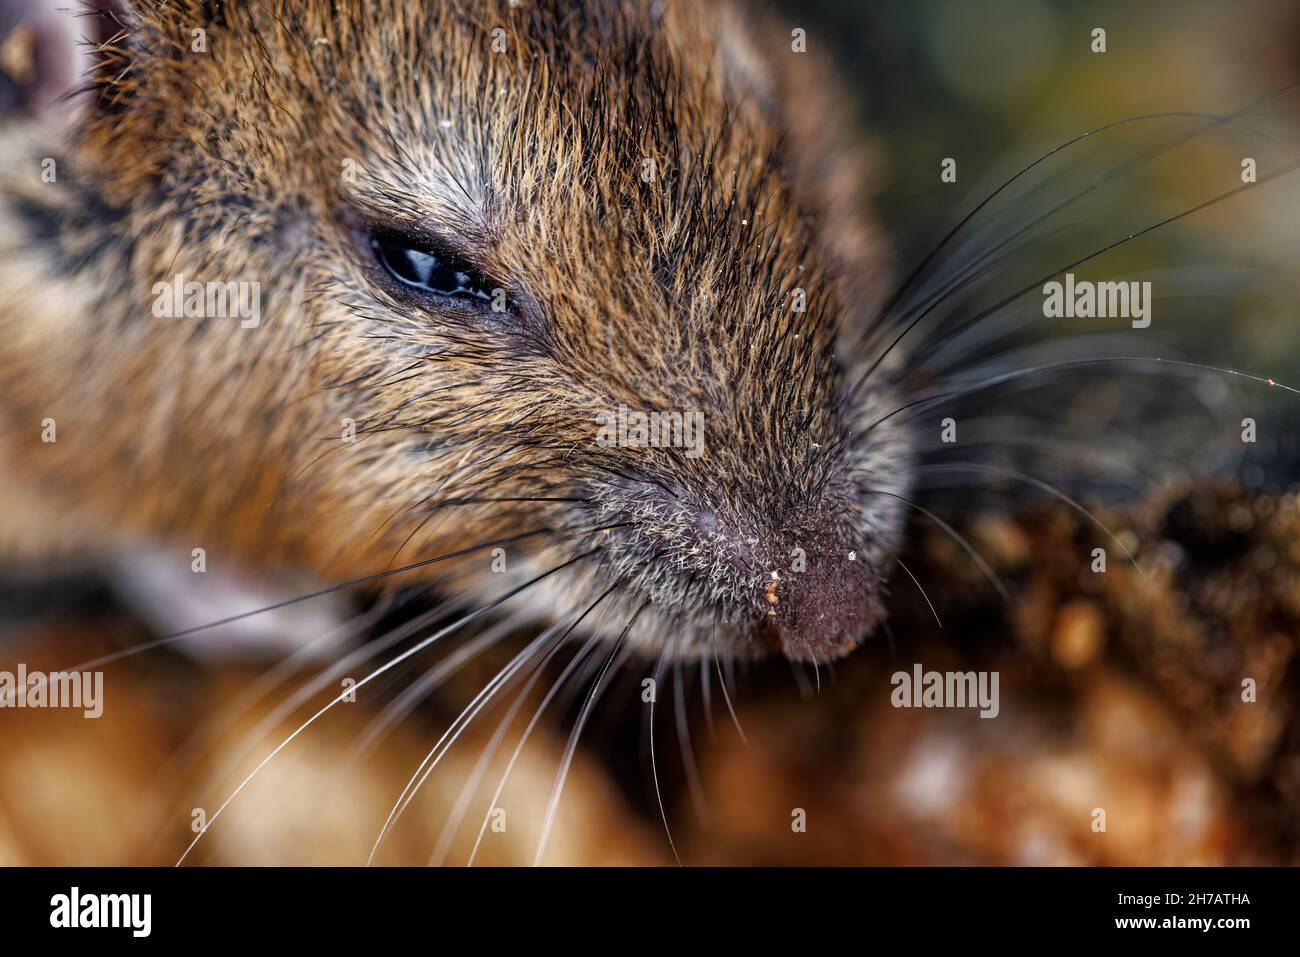 Souris de champ (Apodemus sylvaticus), également souris en bois: Gros plan de la tête avec des whiskers, et nez / museau, photographié dans un jardin à Surrey, se Angleterre Banque D'Images